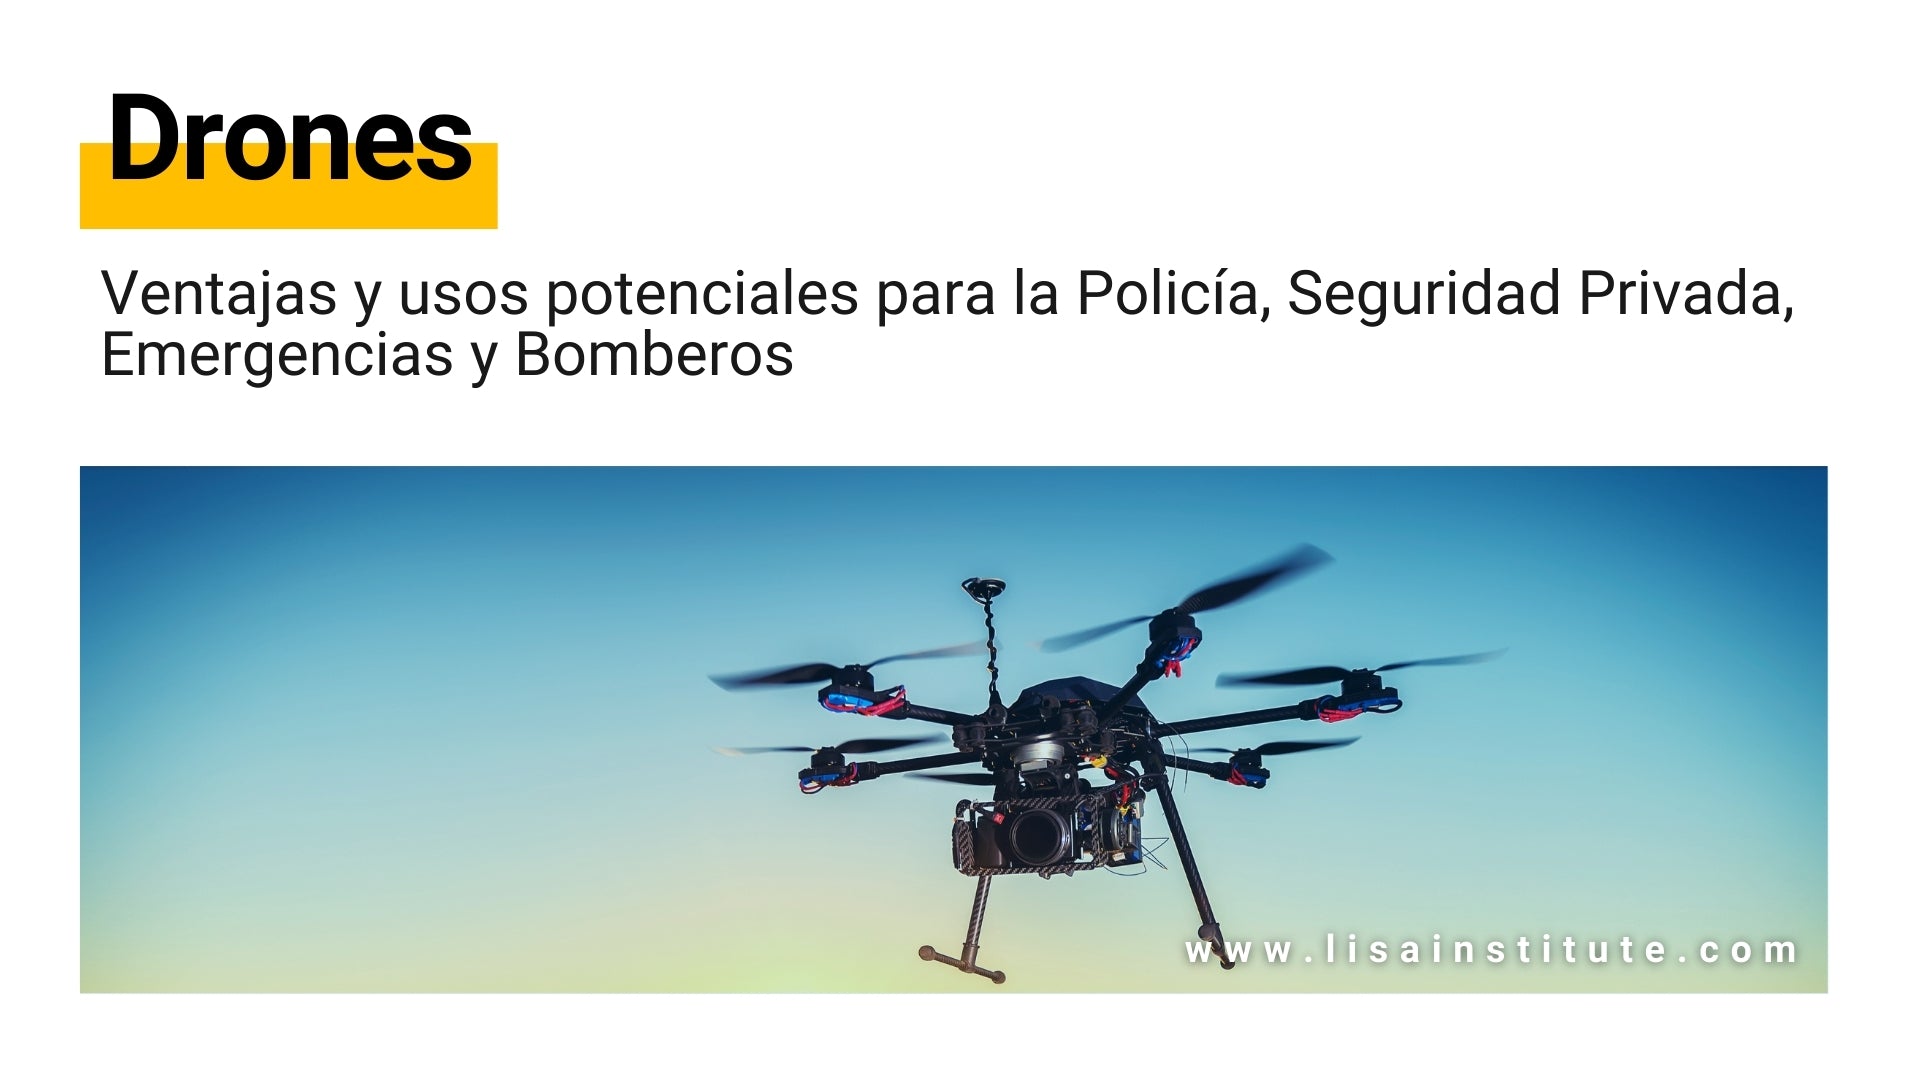 Drones ventajas y usos potenciales para la Policía, Seguridad Privada, Emergencias y Bomberos - LISA Institute